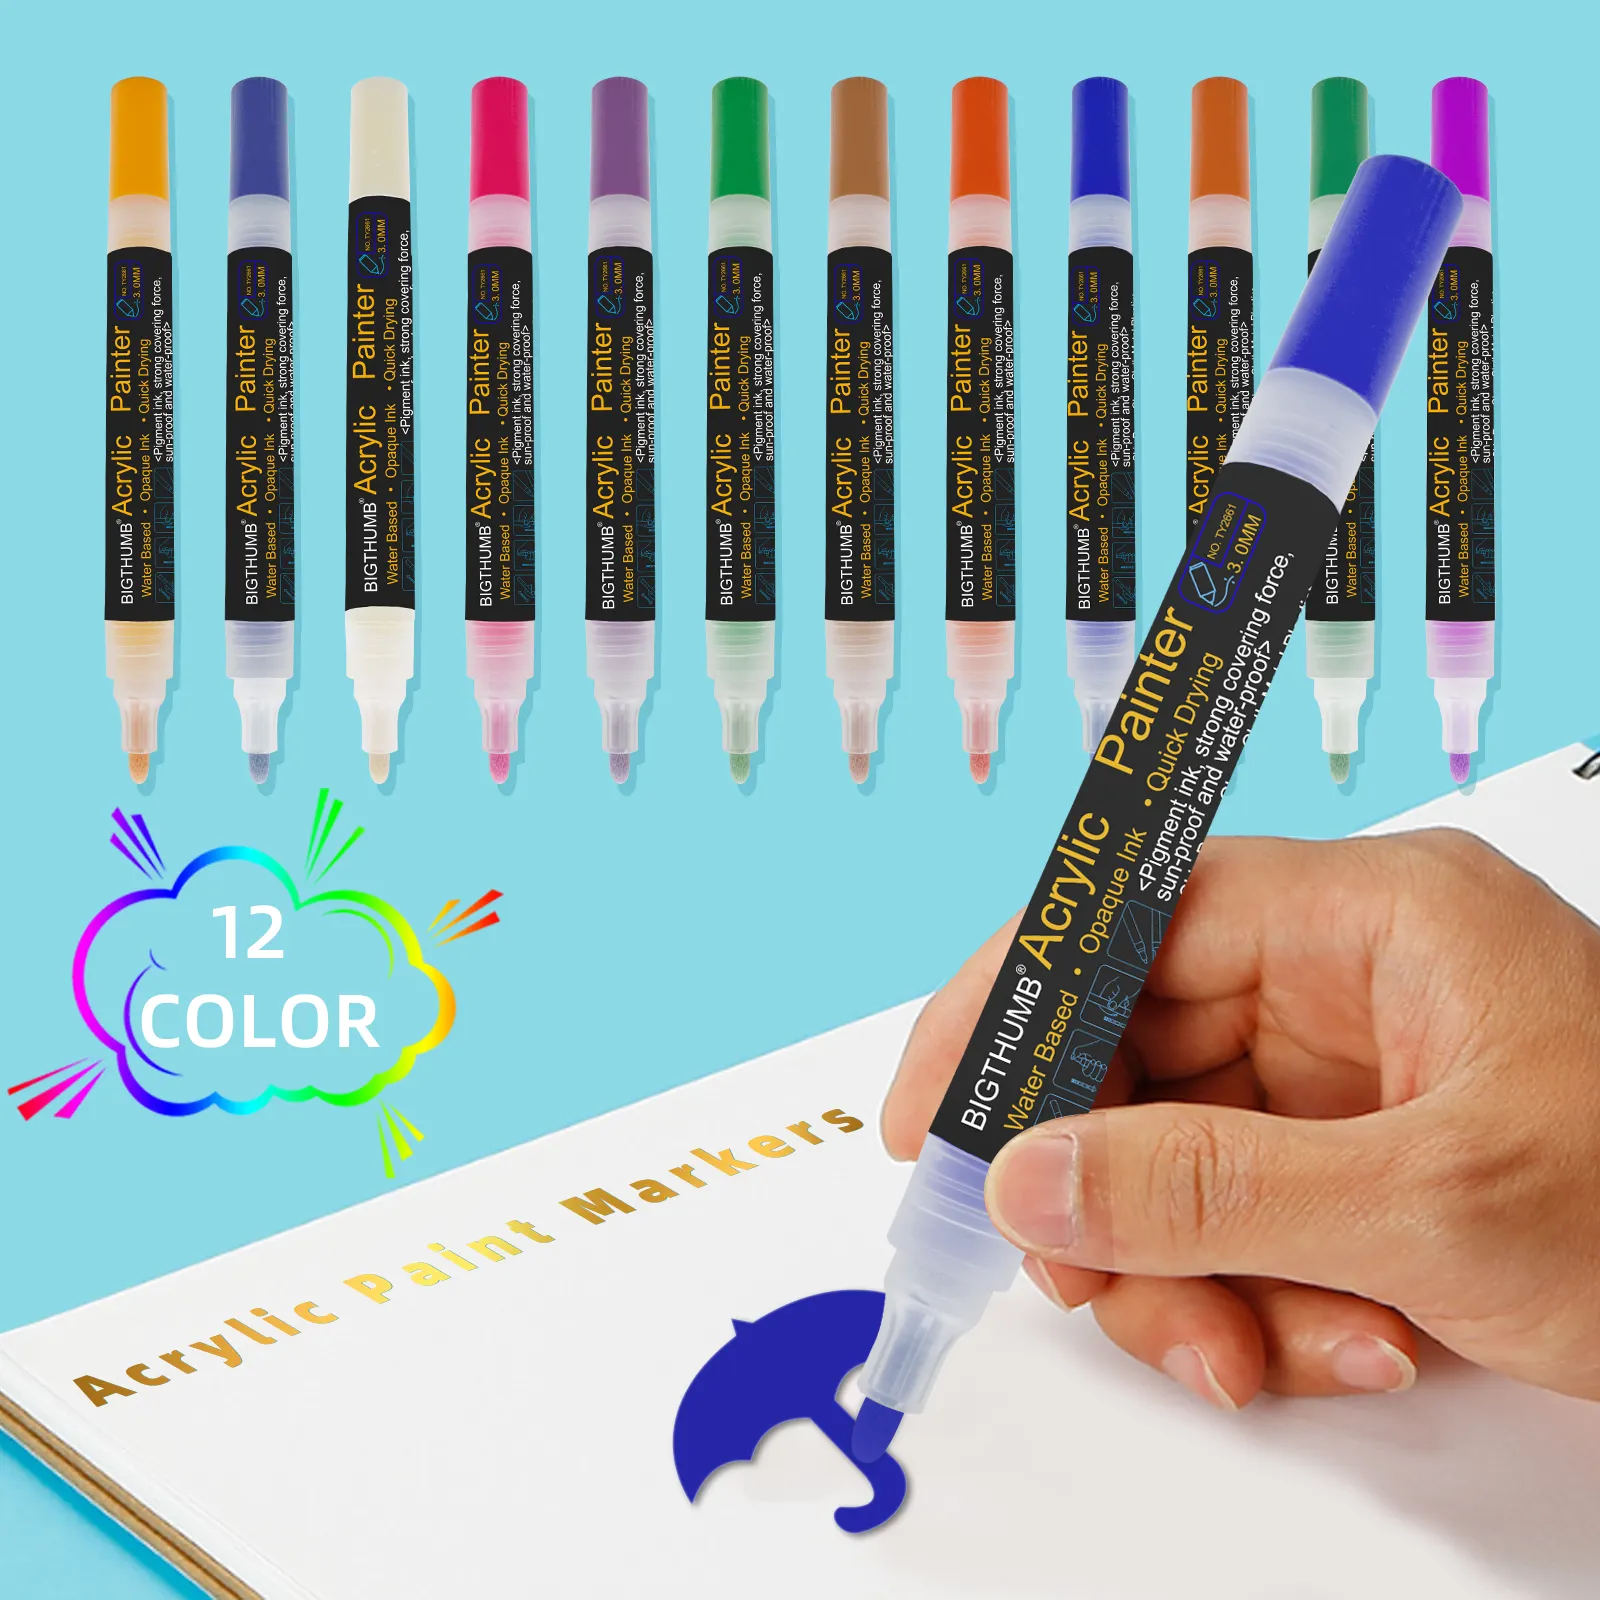 Doppelkopf mit feiner Spitze und mittlerer Spitze Acrylfarbe Stift kunst Markierung stiftset zum Zeichnen Weitere Tassen anzeigen